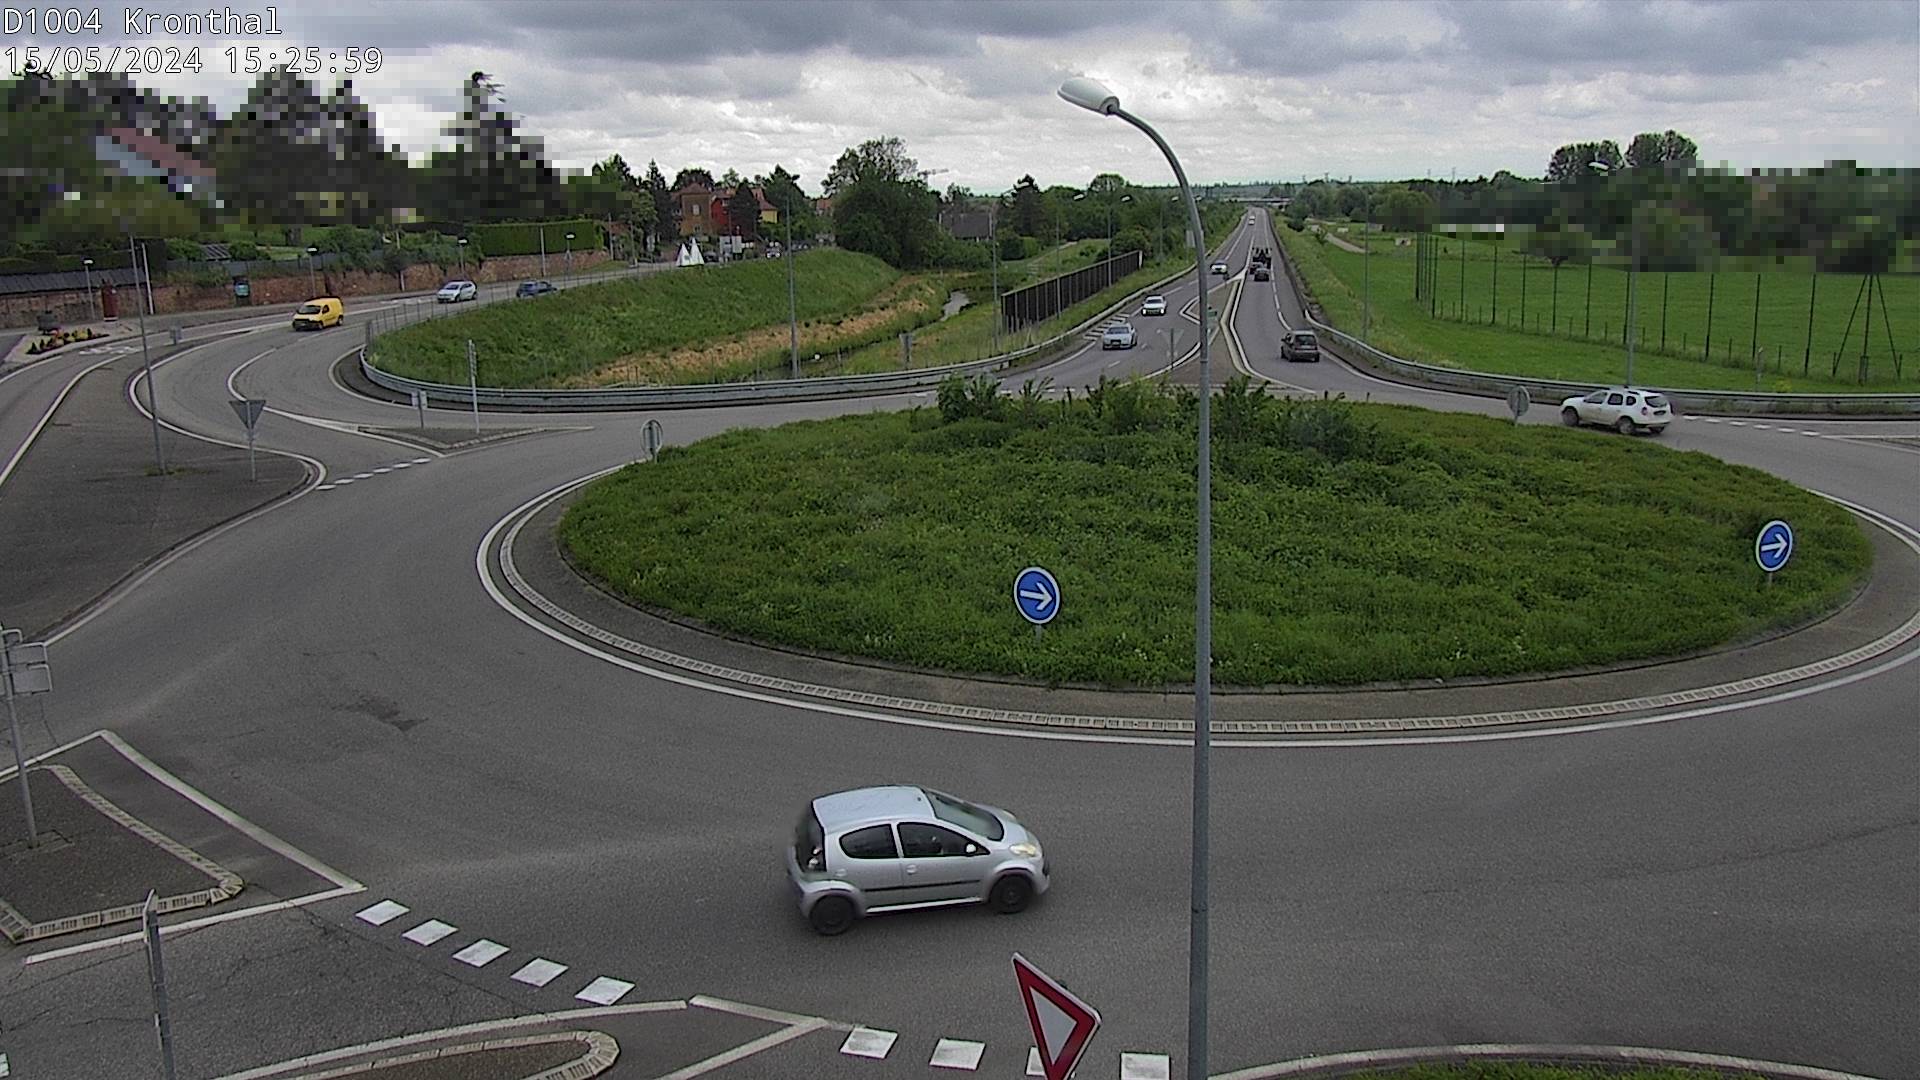 Webcam à la sortie de Marlenheim sur le rond-point joignant la D1002, la D422 et la D2004